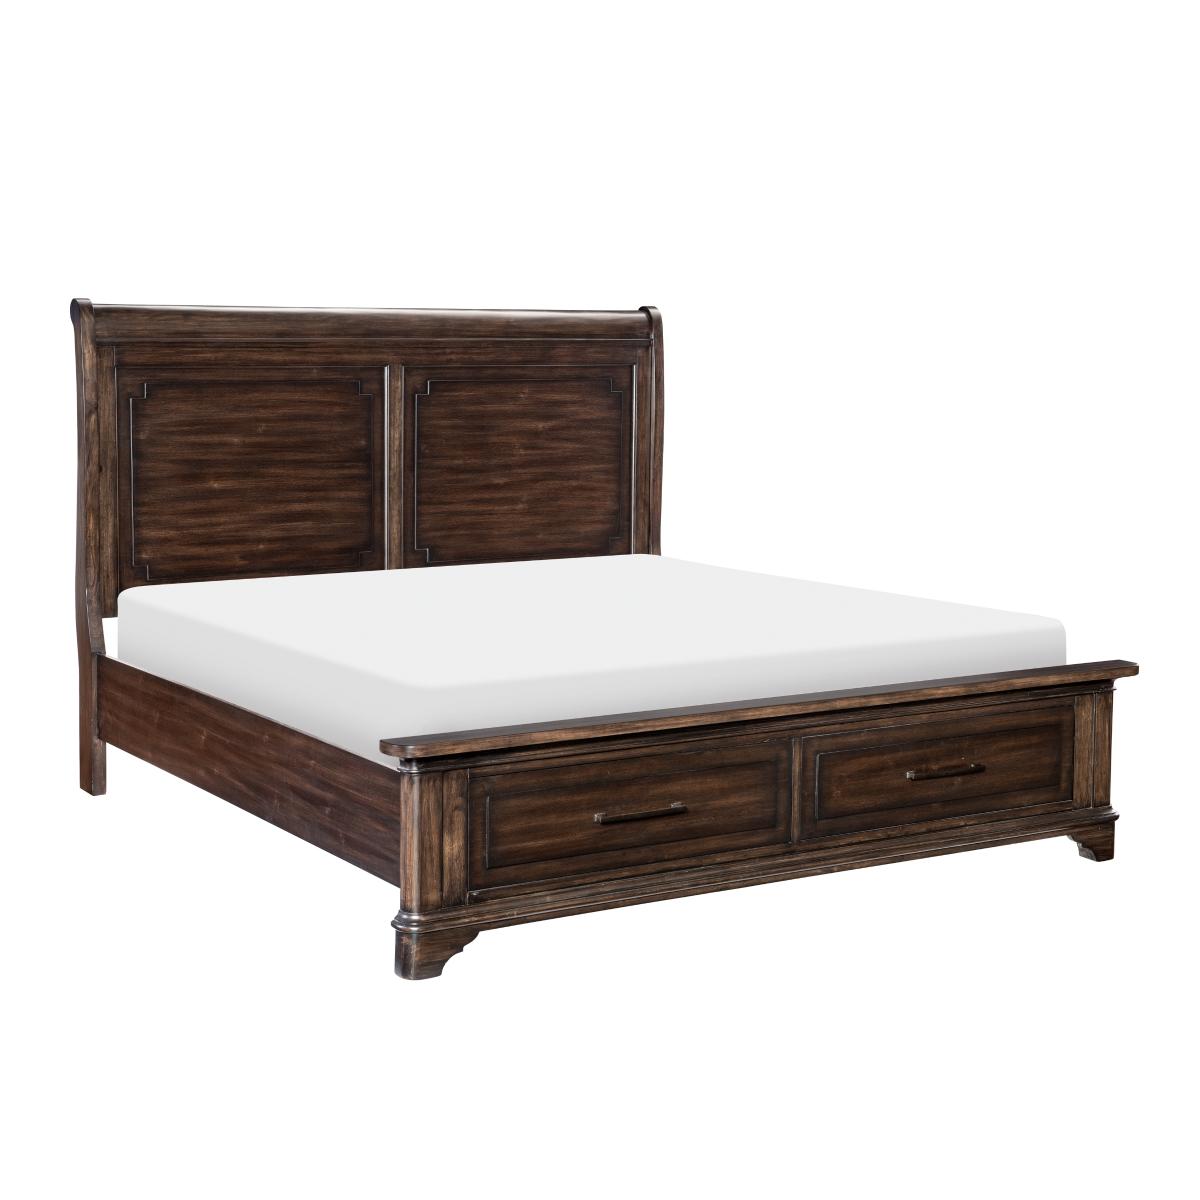 

    
Transitional Rustic Brown Solid Wood King Bed Homelegance 1406K-1EK*
